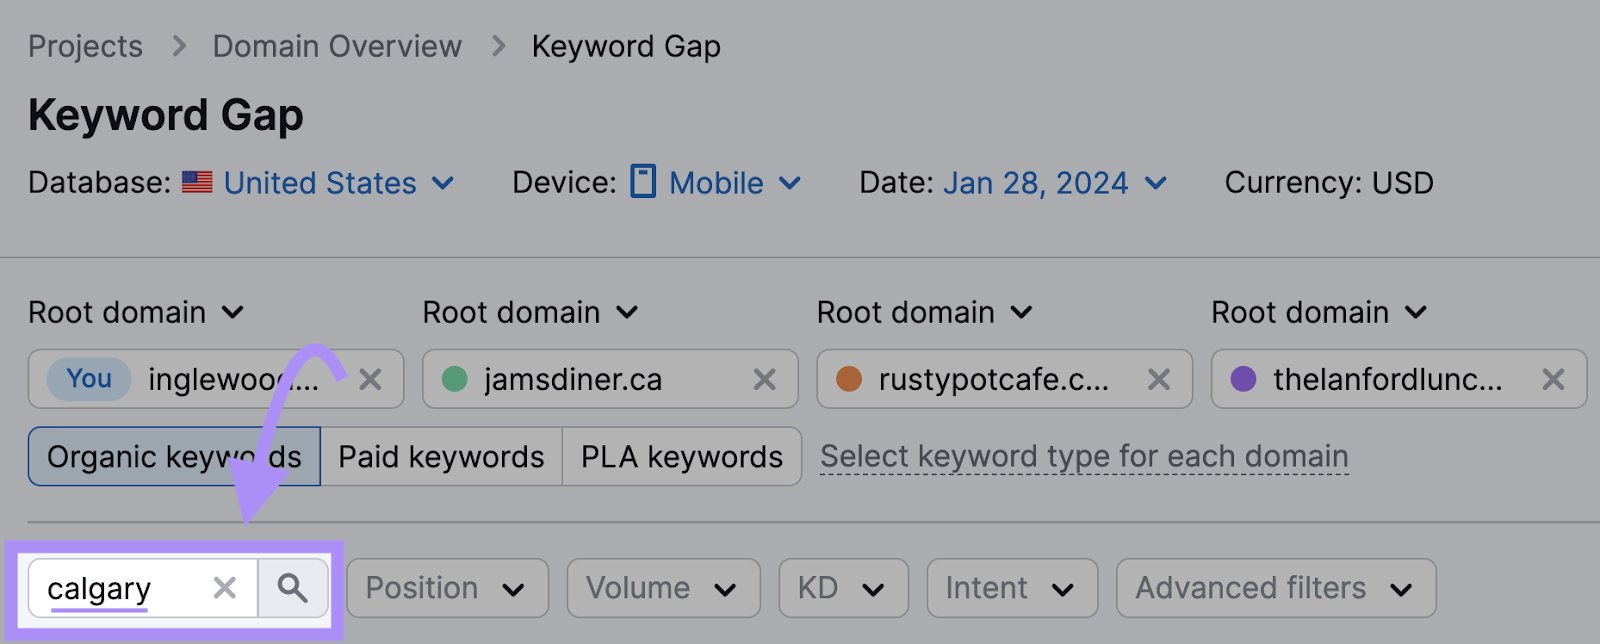 Filtering keywords in Keyword Gap tool by "calgary"